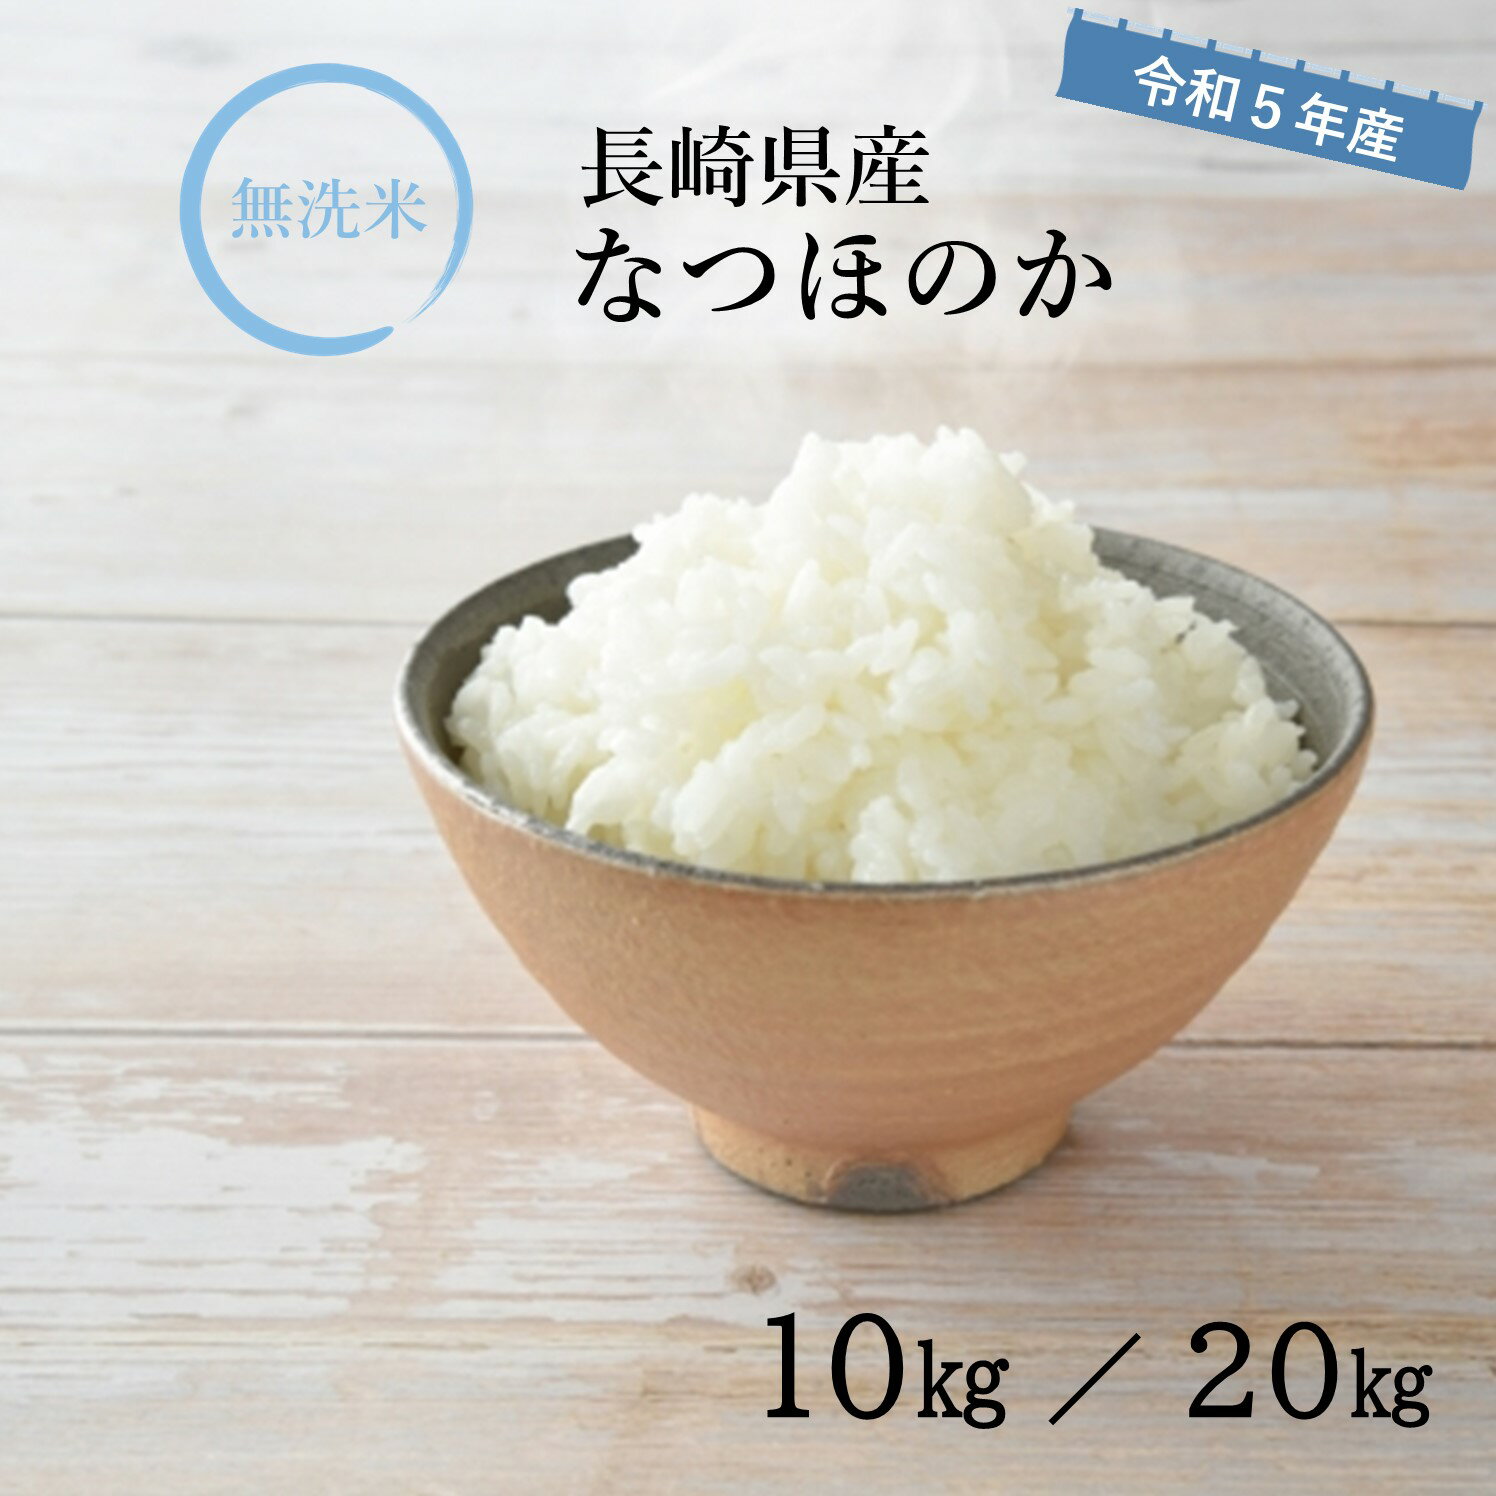 【 長期保存可能 備蓄米 】無洗米 